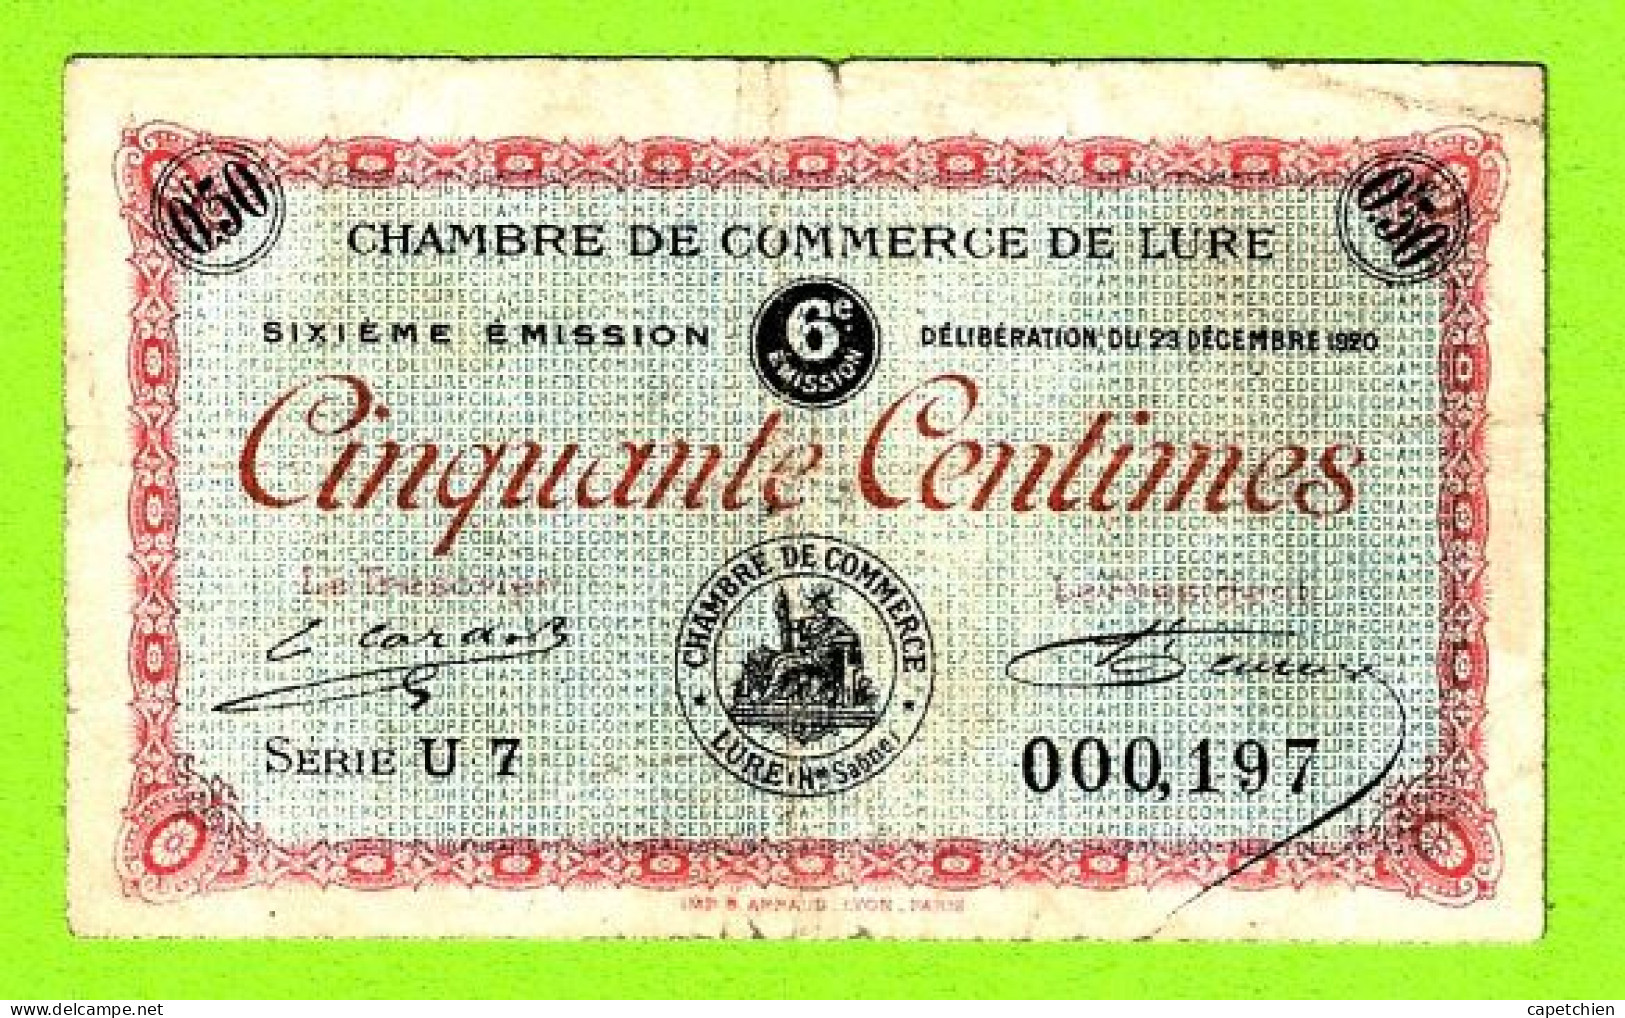 FRANCE / LURE / 50 CENTIMES / 29 DECEMBRE 1920 / N° 000197 / SERIE U7 / 6eme EMISSION - Handelskammer